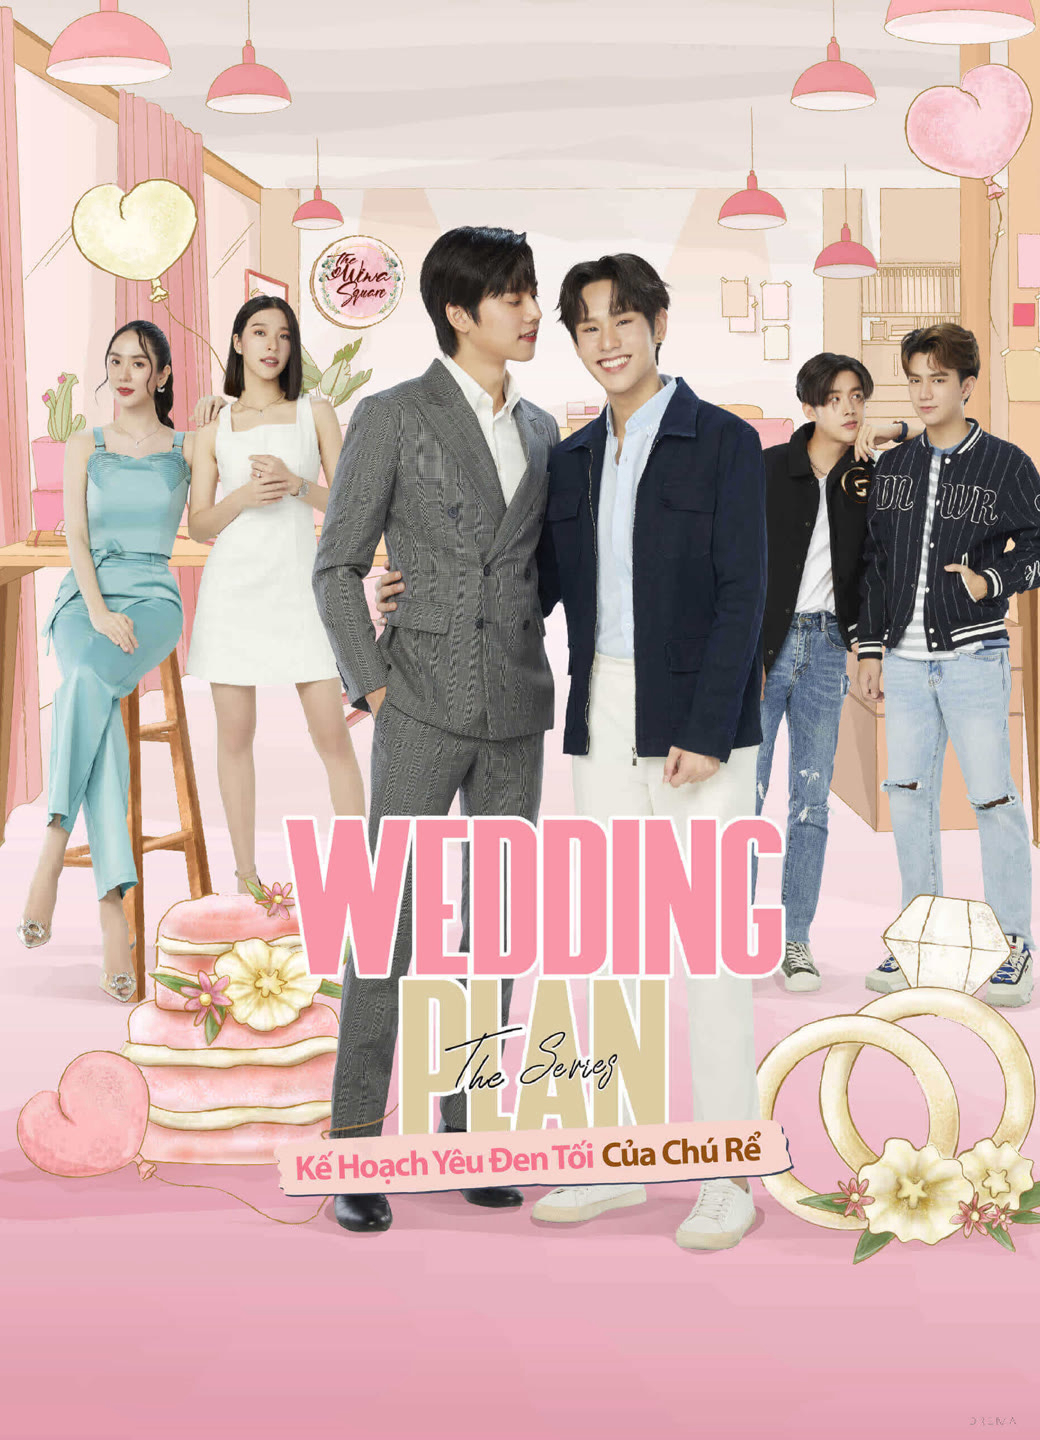 Poster Phim Wedding Plan: Kế Hoạch Yêu Đen Tối Của Chú Rể (Wedding Plan(Un-cut))